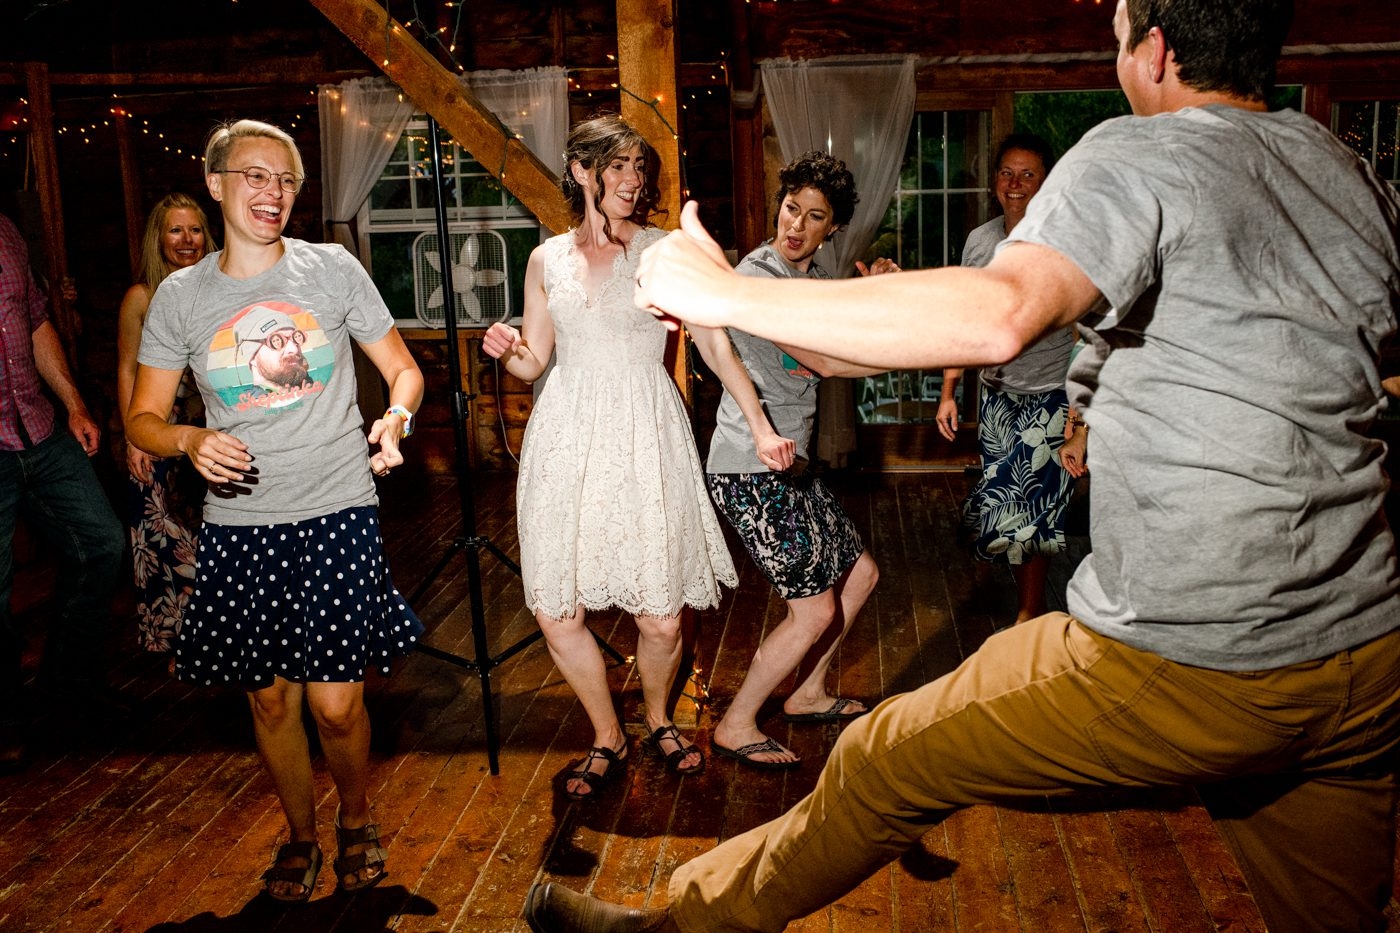 Roys-Barn-Wedding-Reception-Bride-Dancing